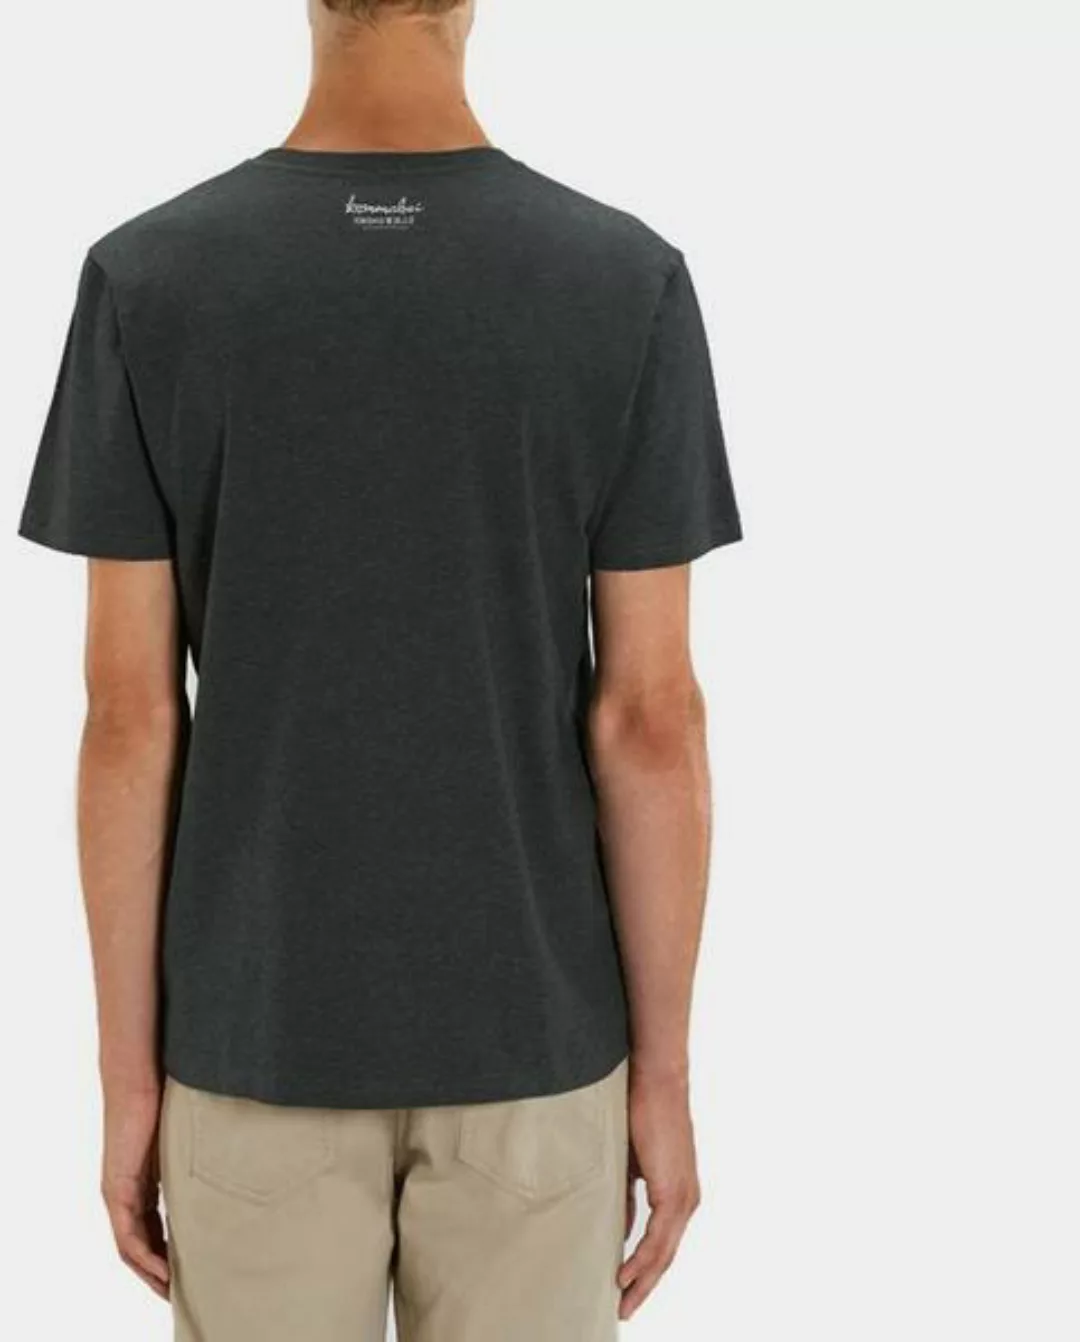 Kommabei Herren T Shirt Fuchs / Fox Dark Heather günstig online kaufen